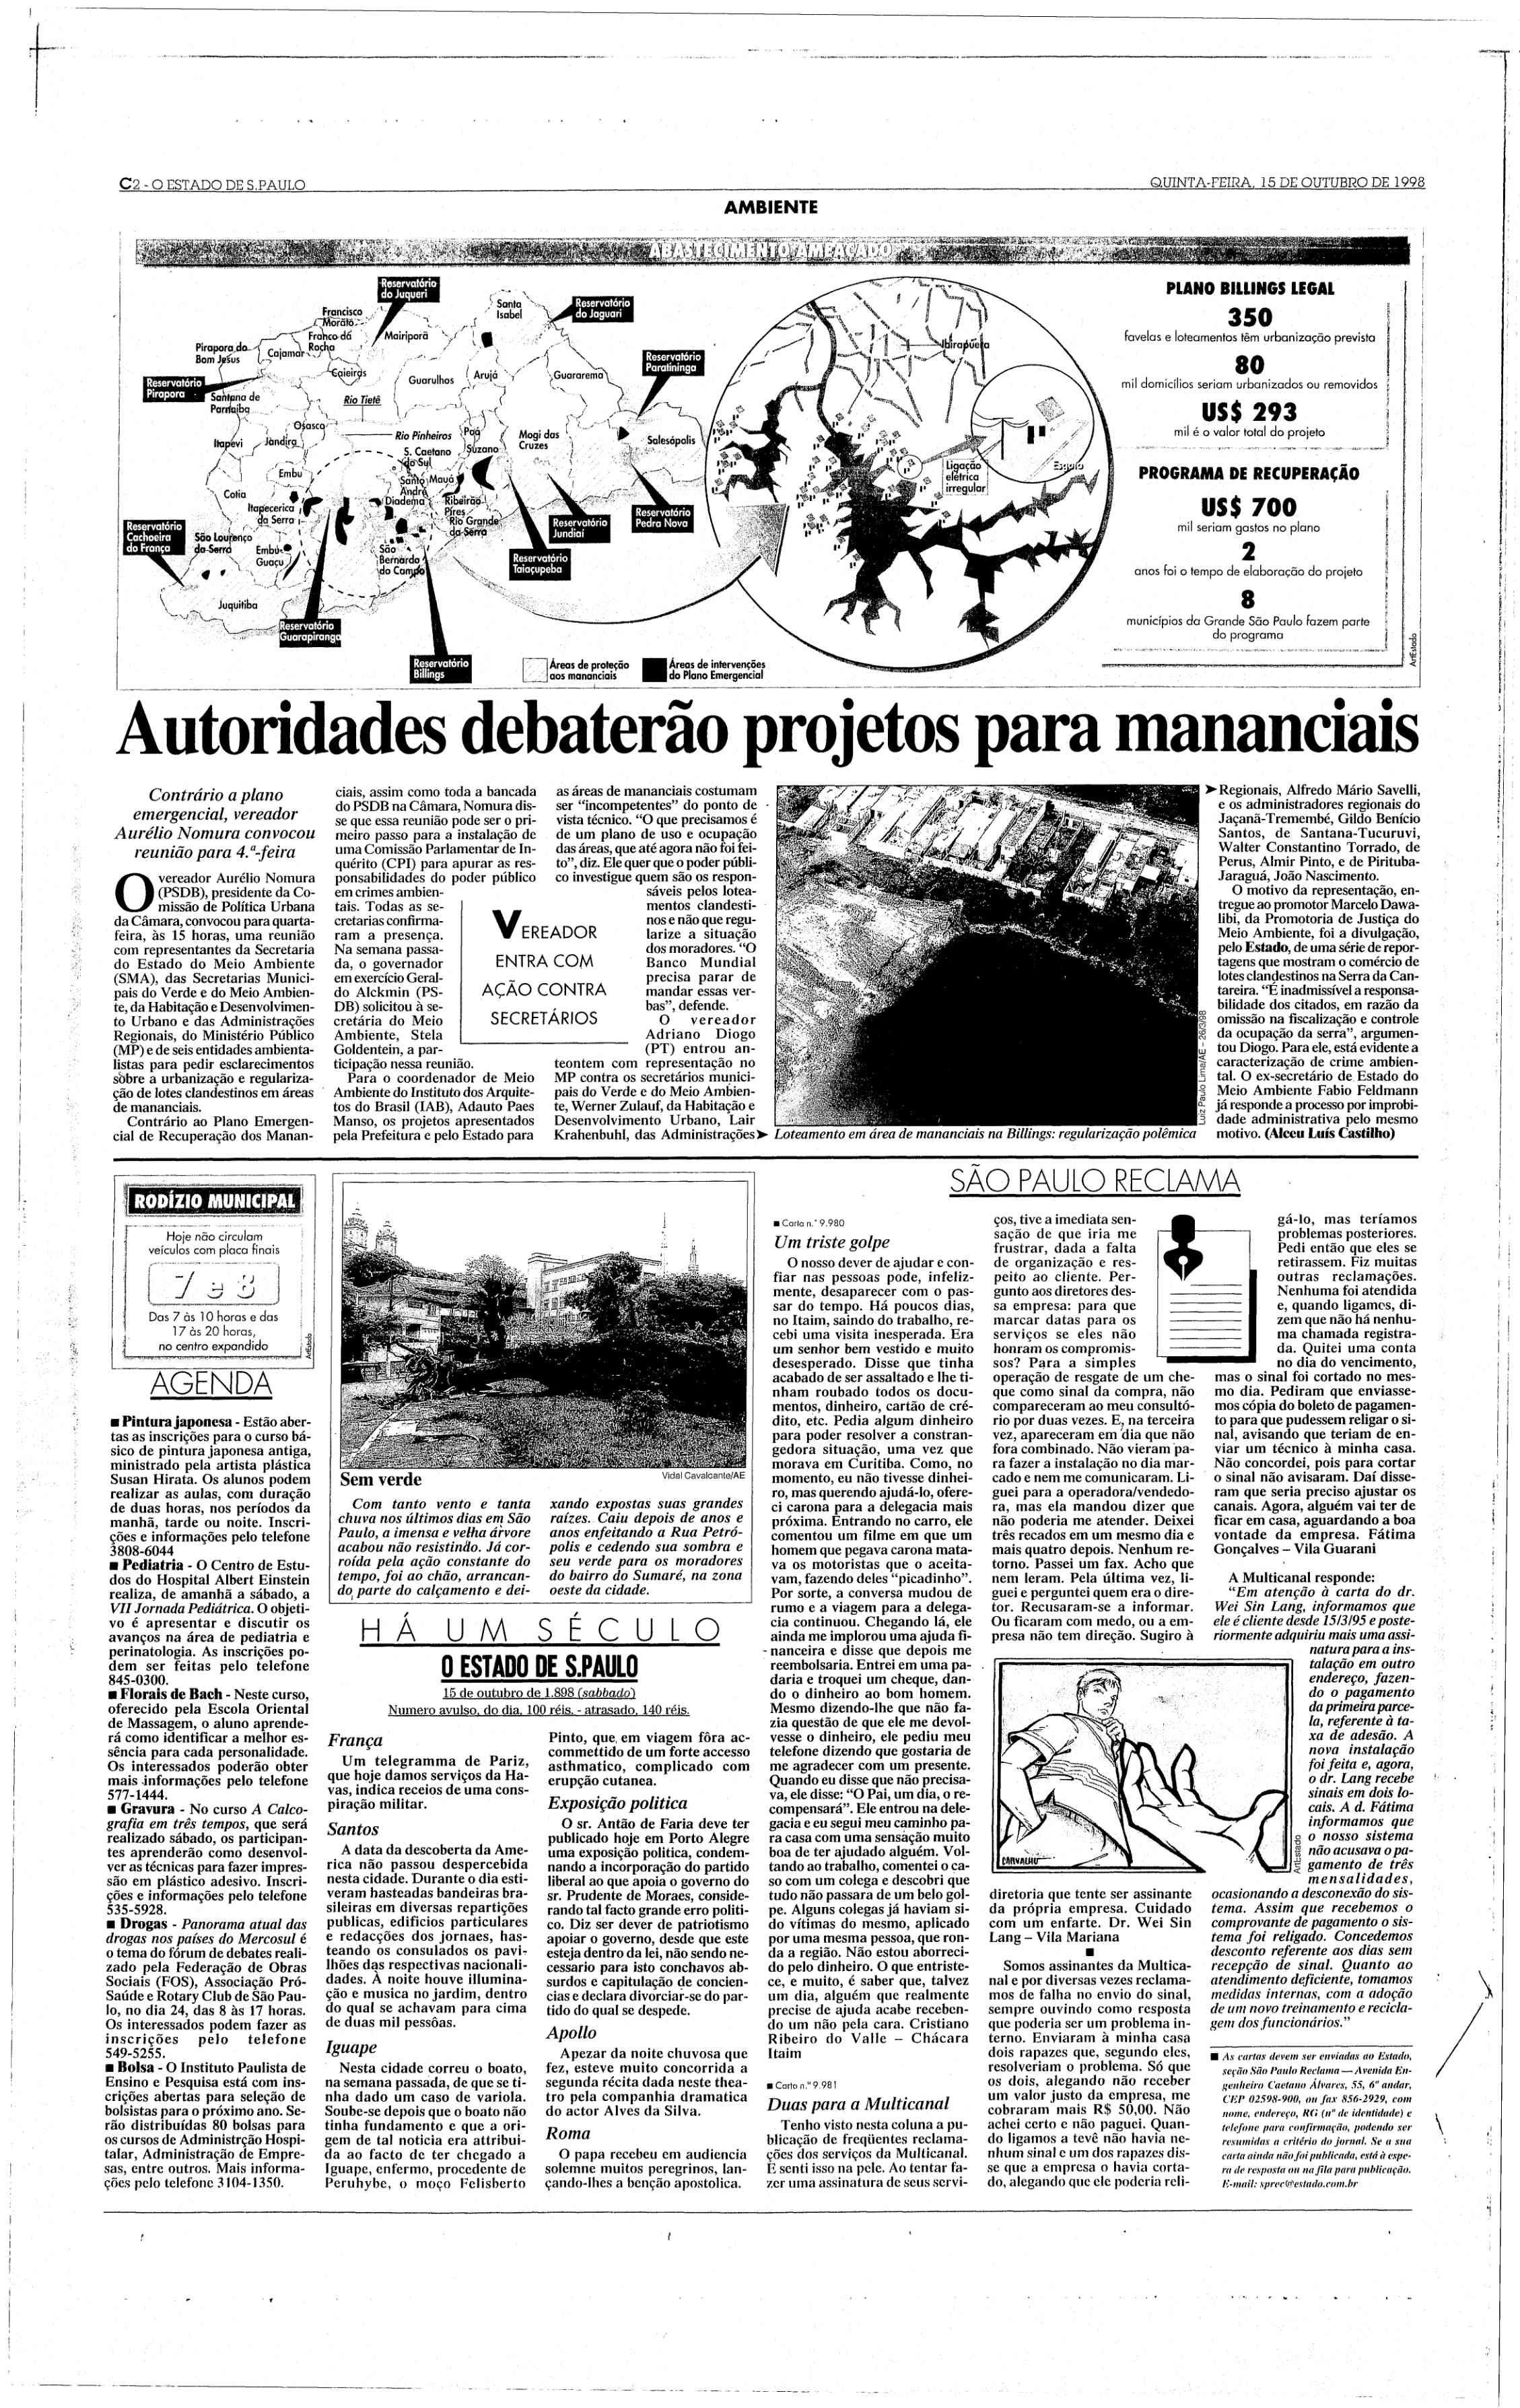 1998 – Estadão